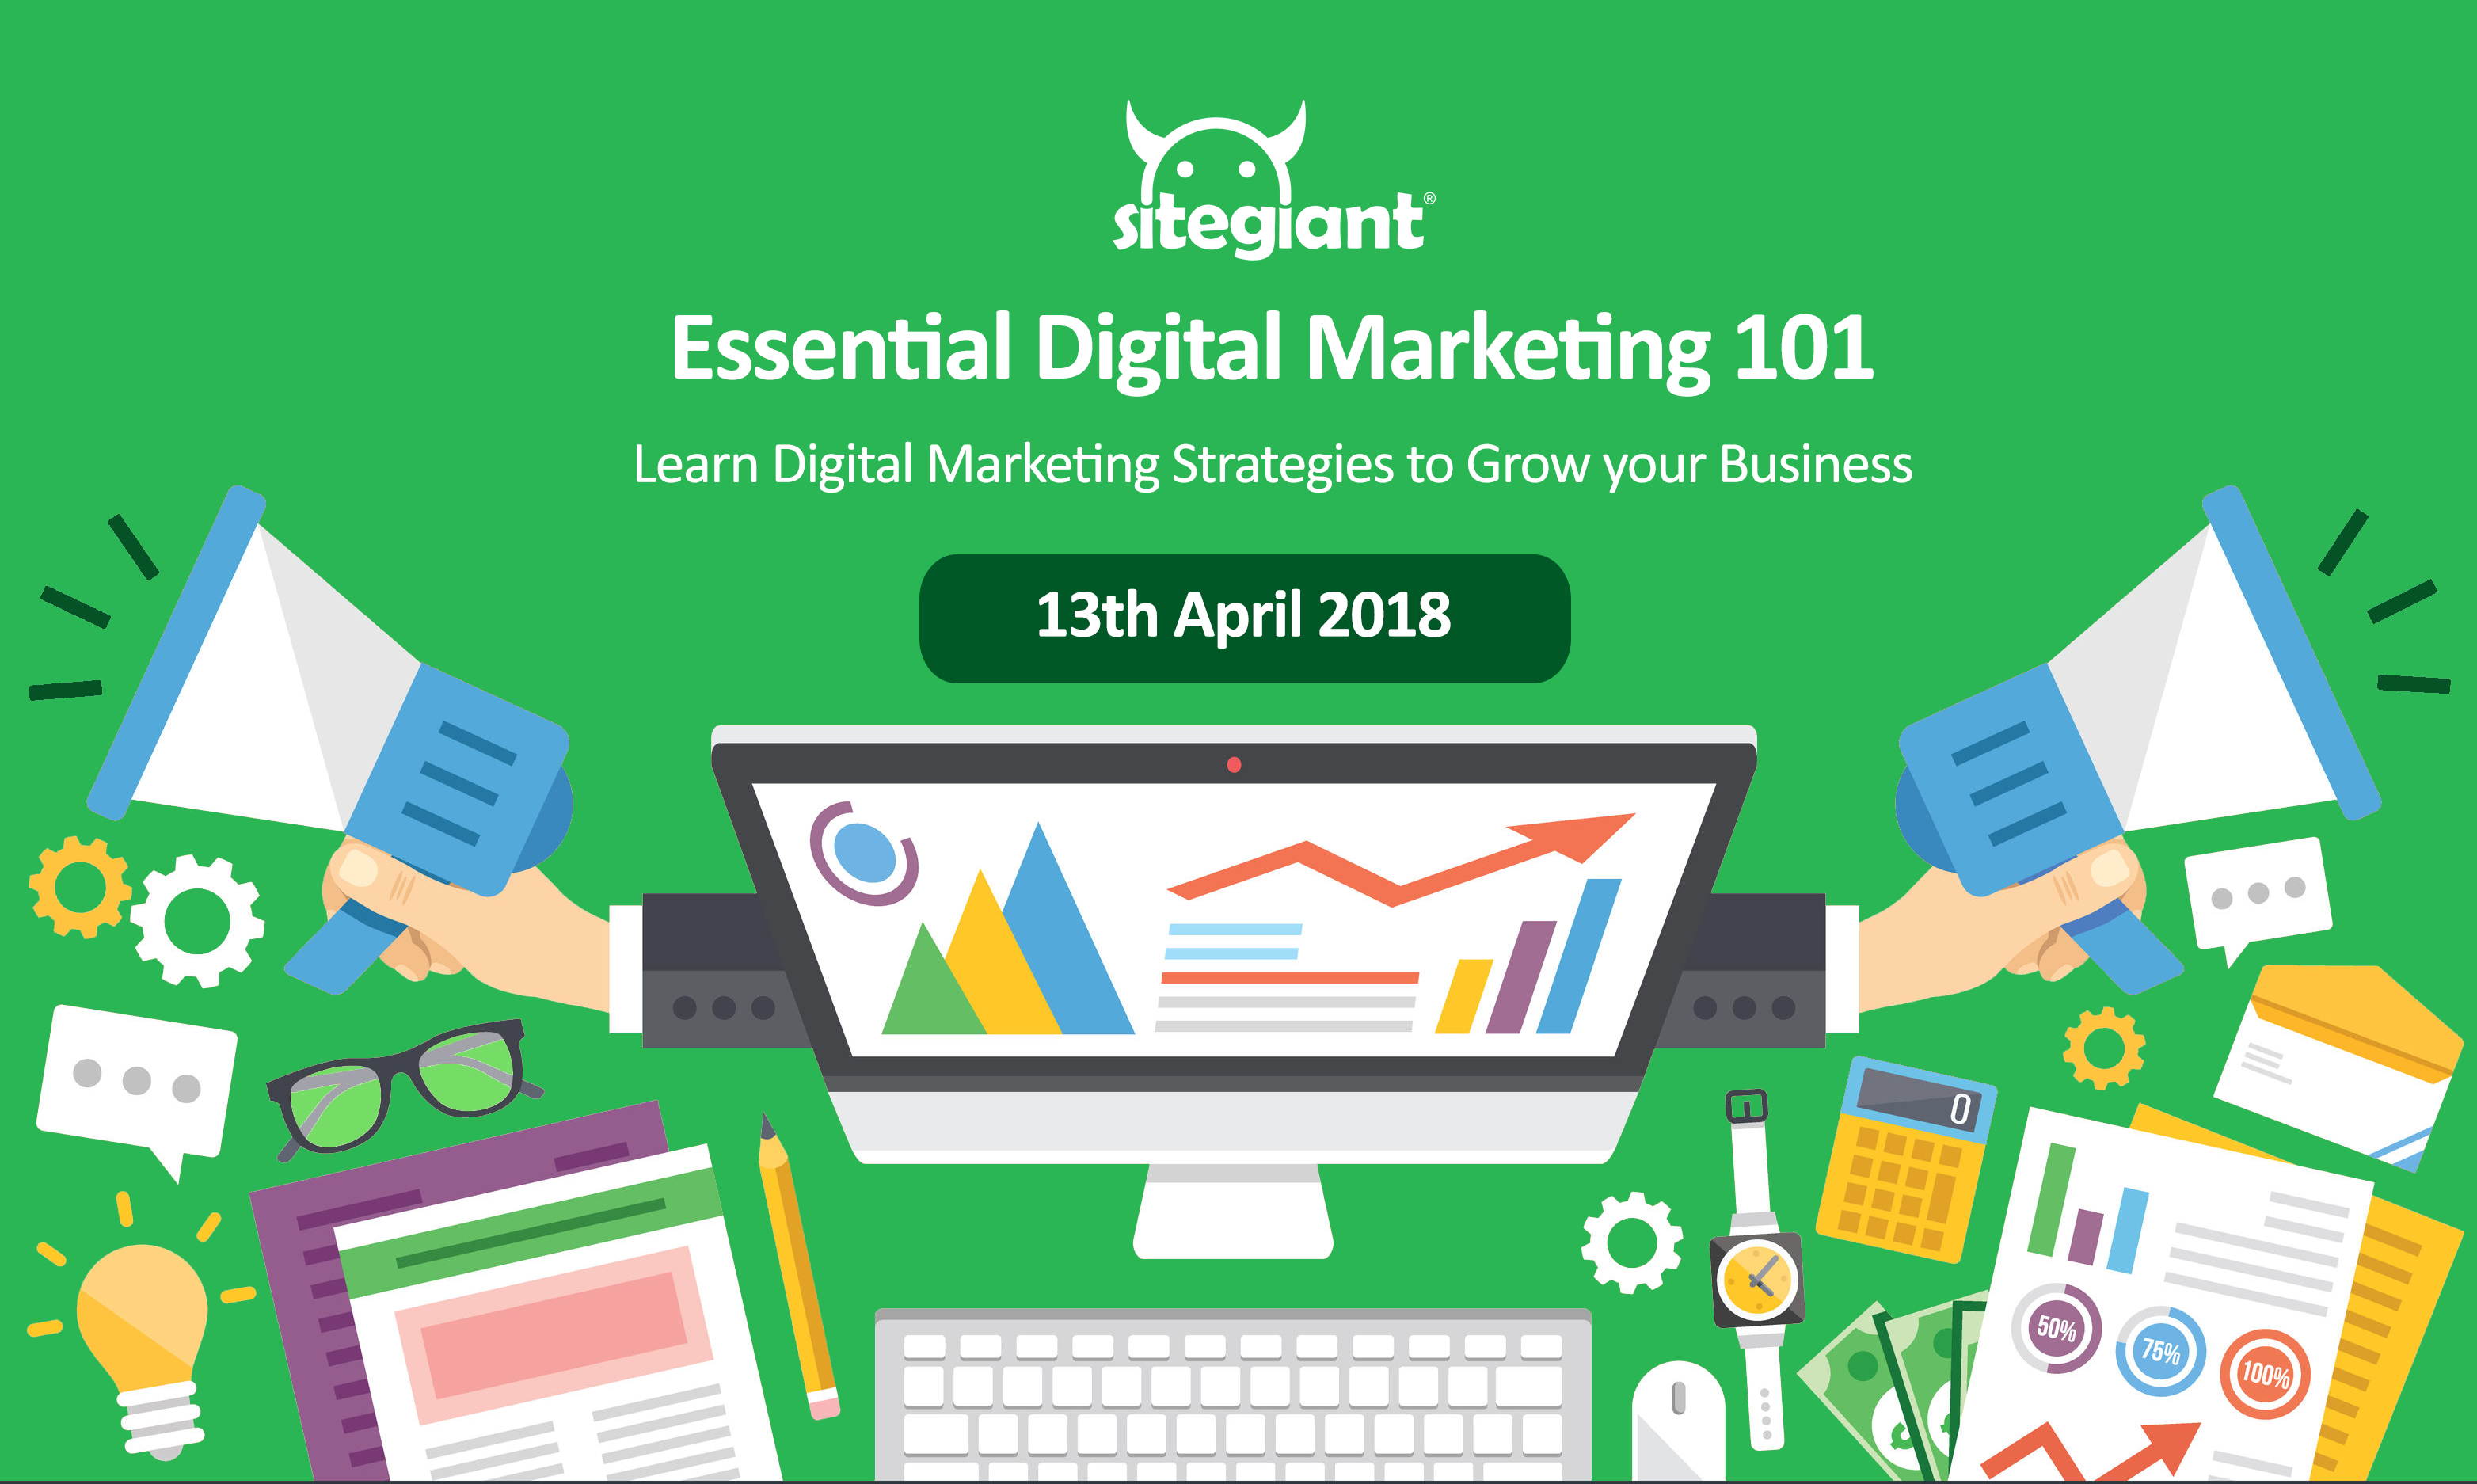 Essential Digital Marketing 101 Training